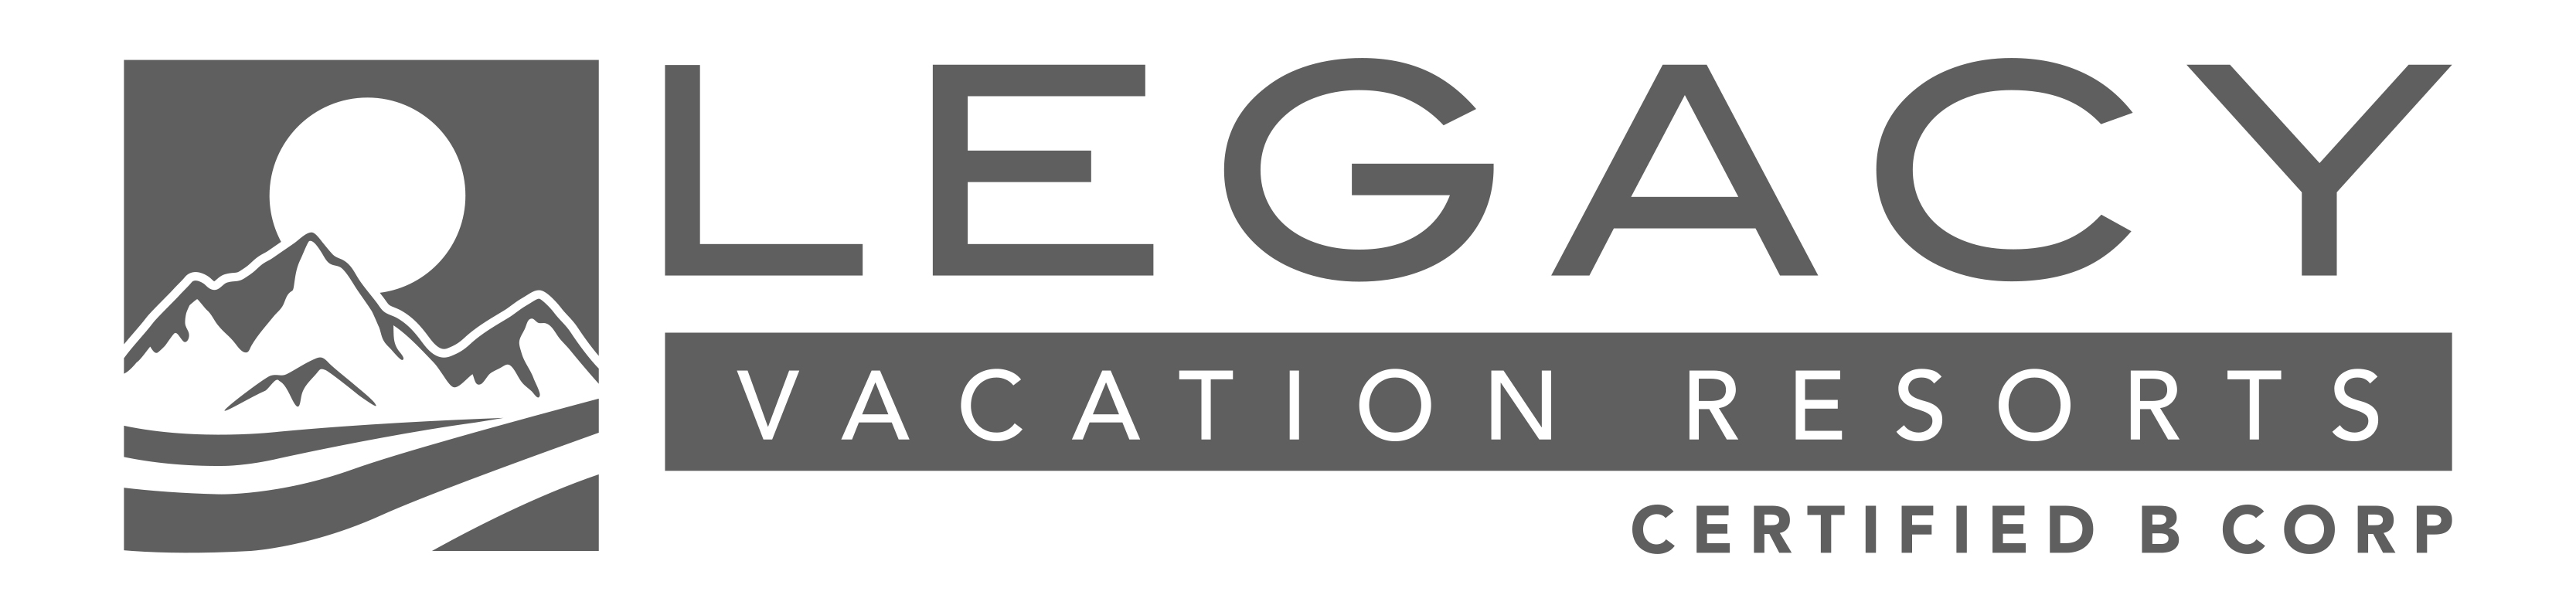 Legacy Vacation Resorts Company Logo